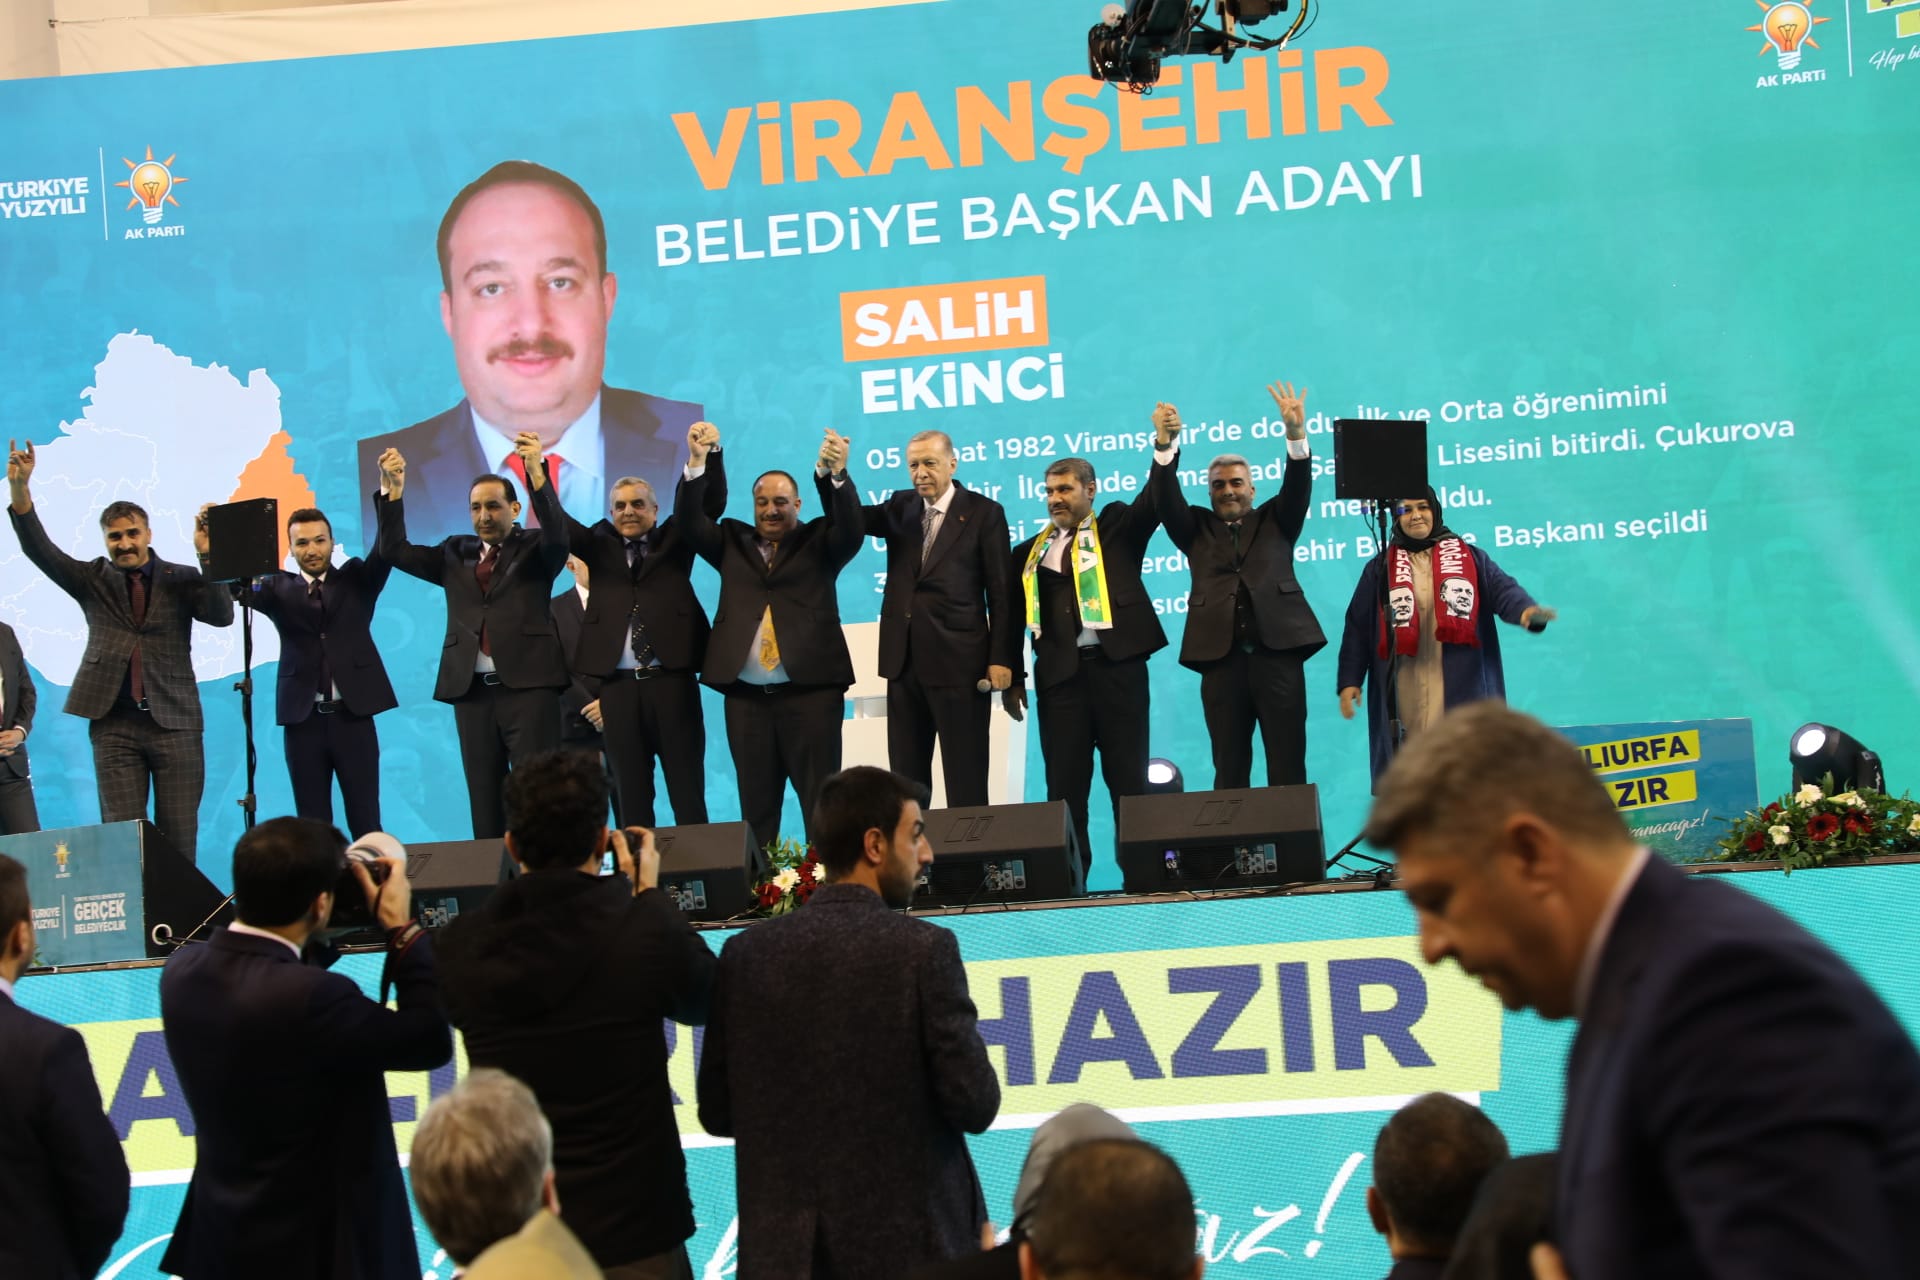 Şanlıurfa’da AK Parti’den bir istifa haberi daha